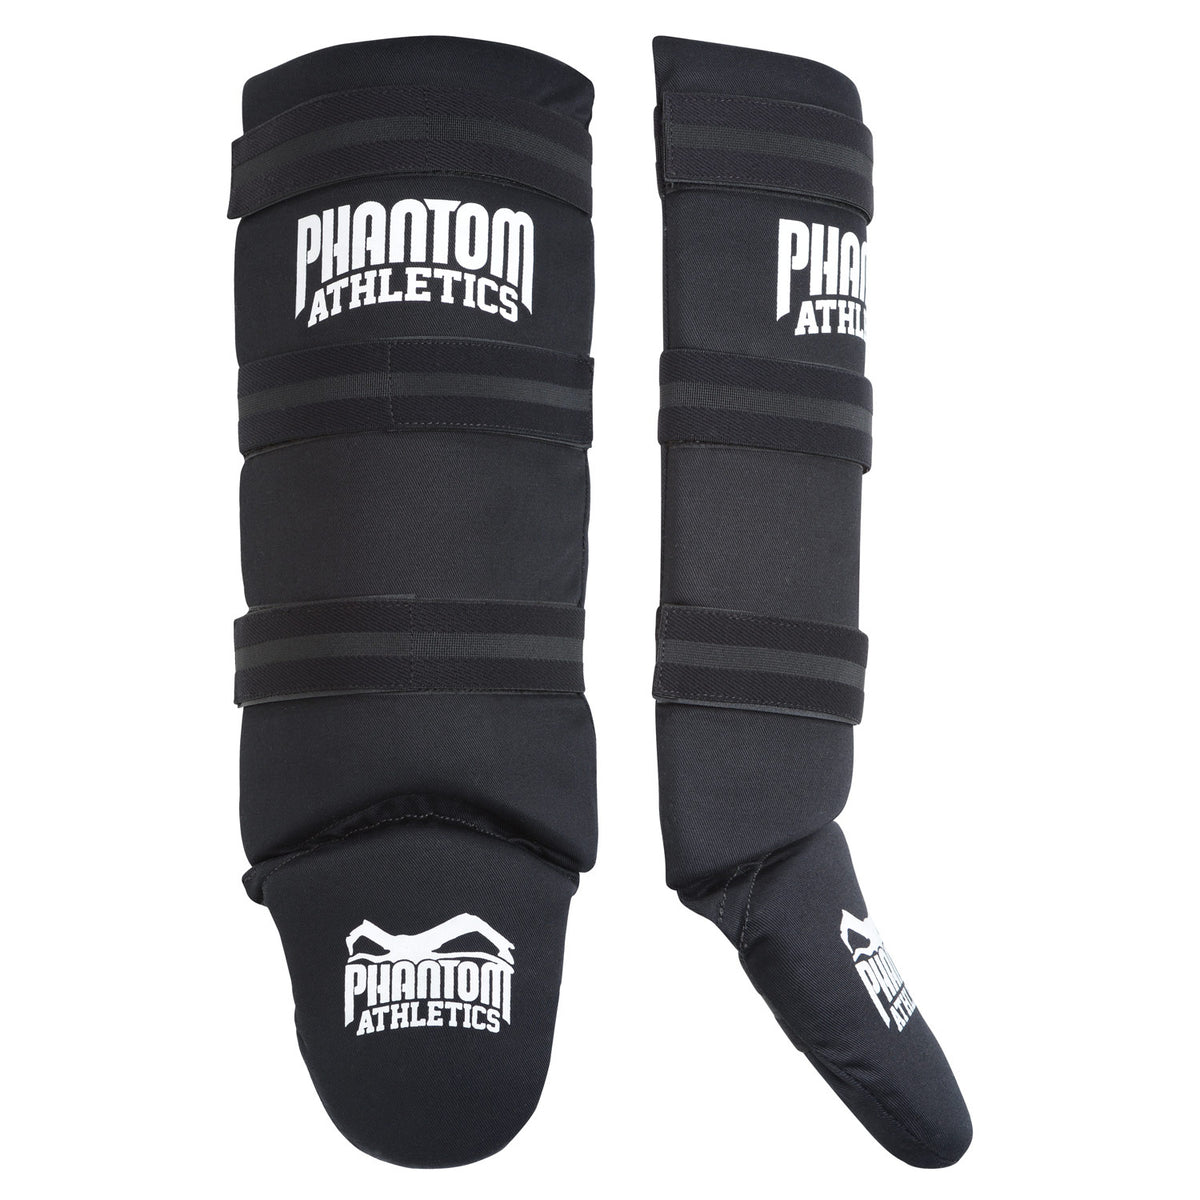 Caneleiras Phantom para artes marciais Impact Basic com enchimento de espuma espessa